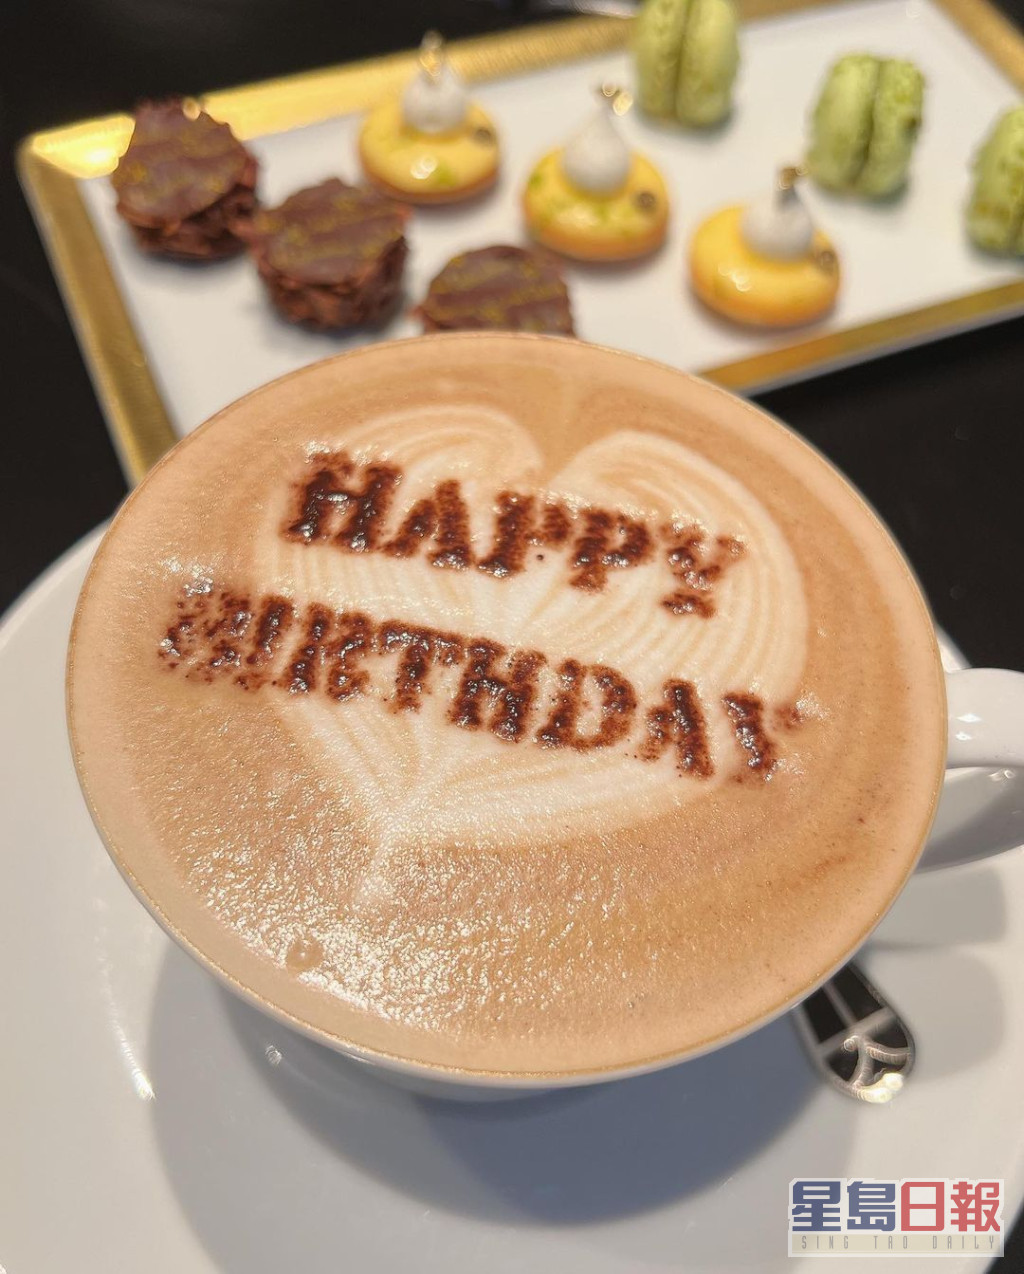 咖啡上还撒上「Happy Birthday」字样的朱古力粉。